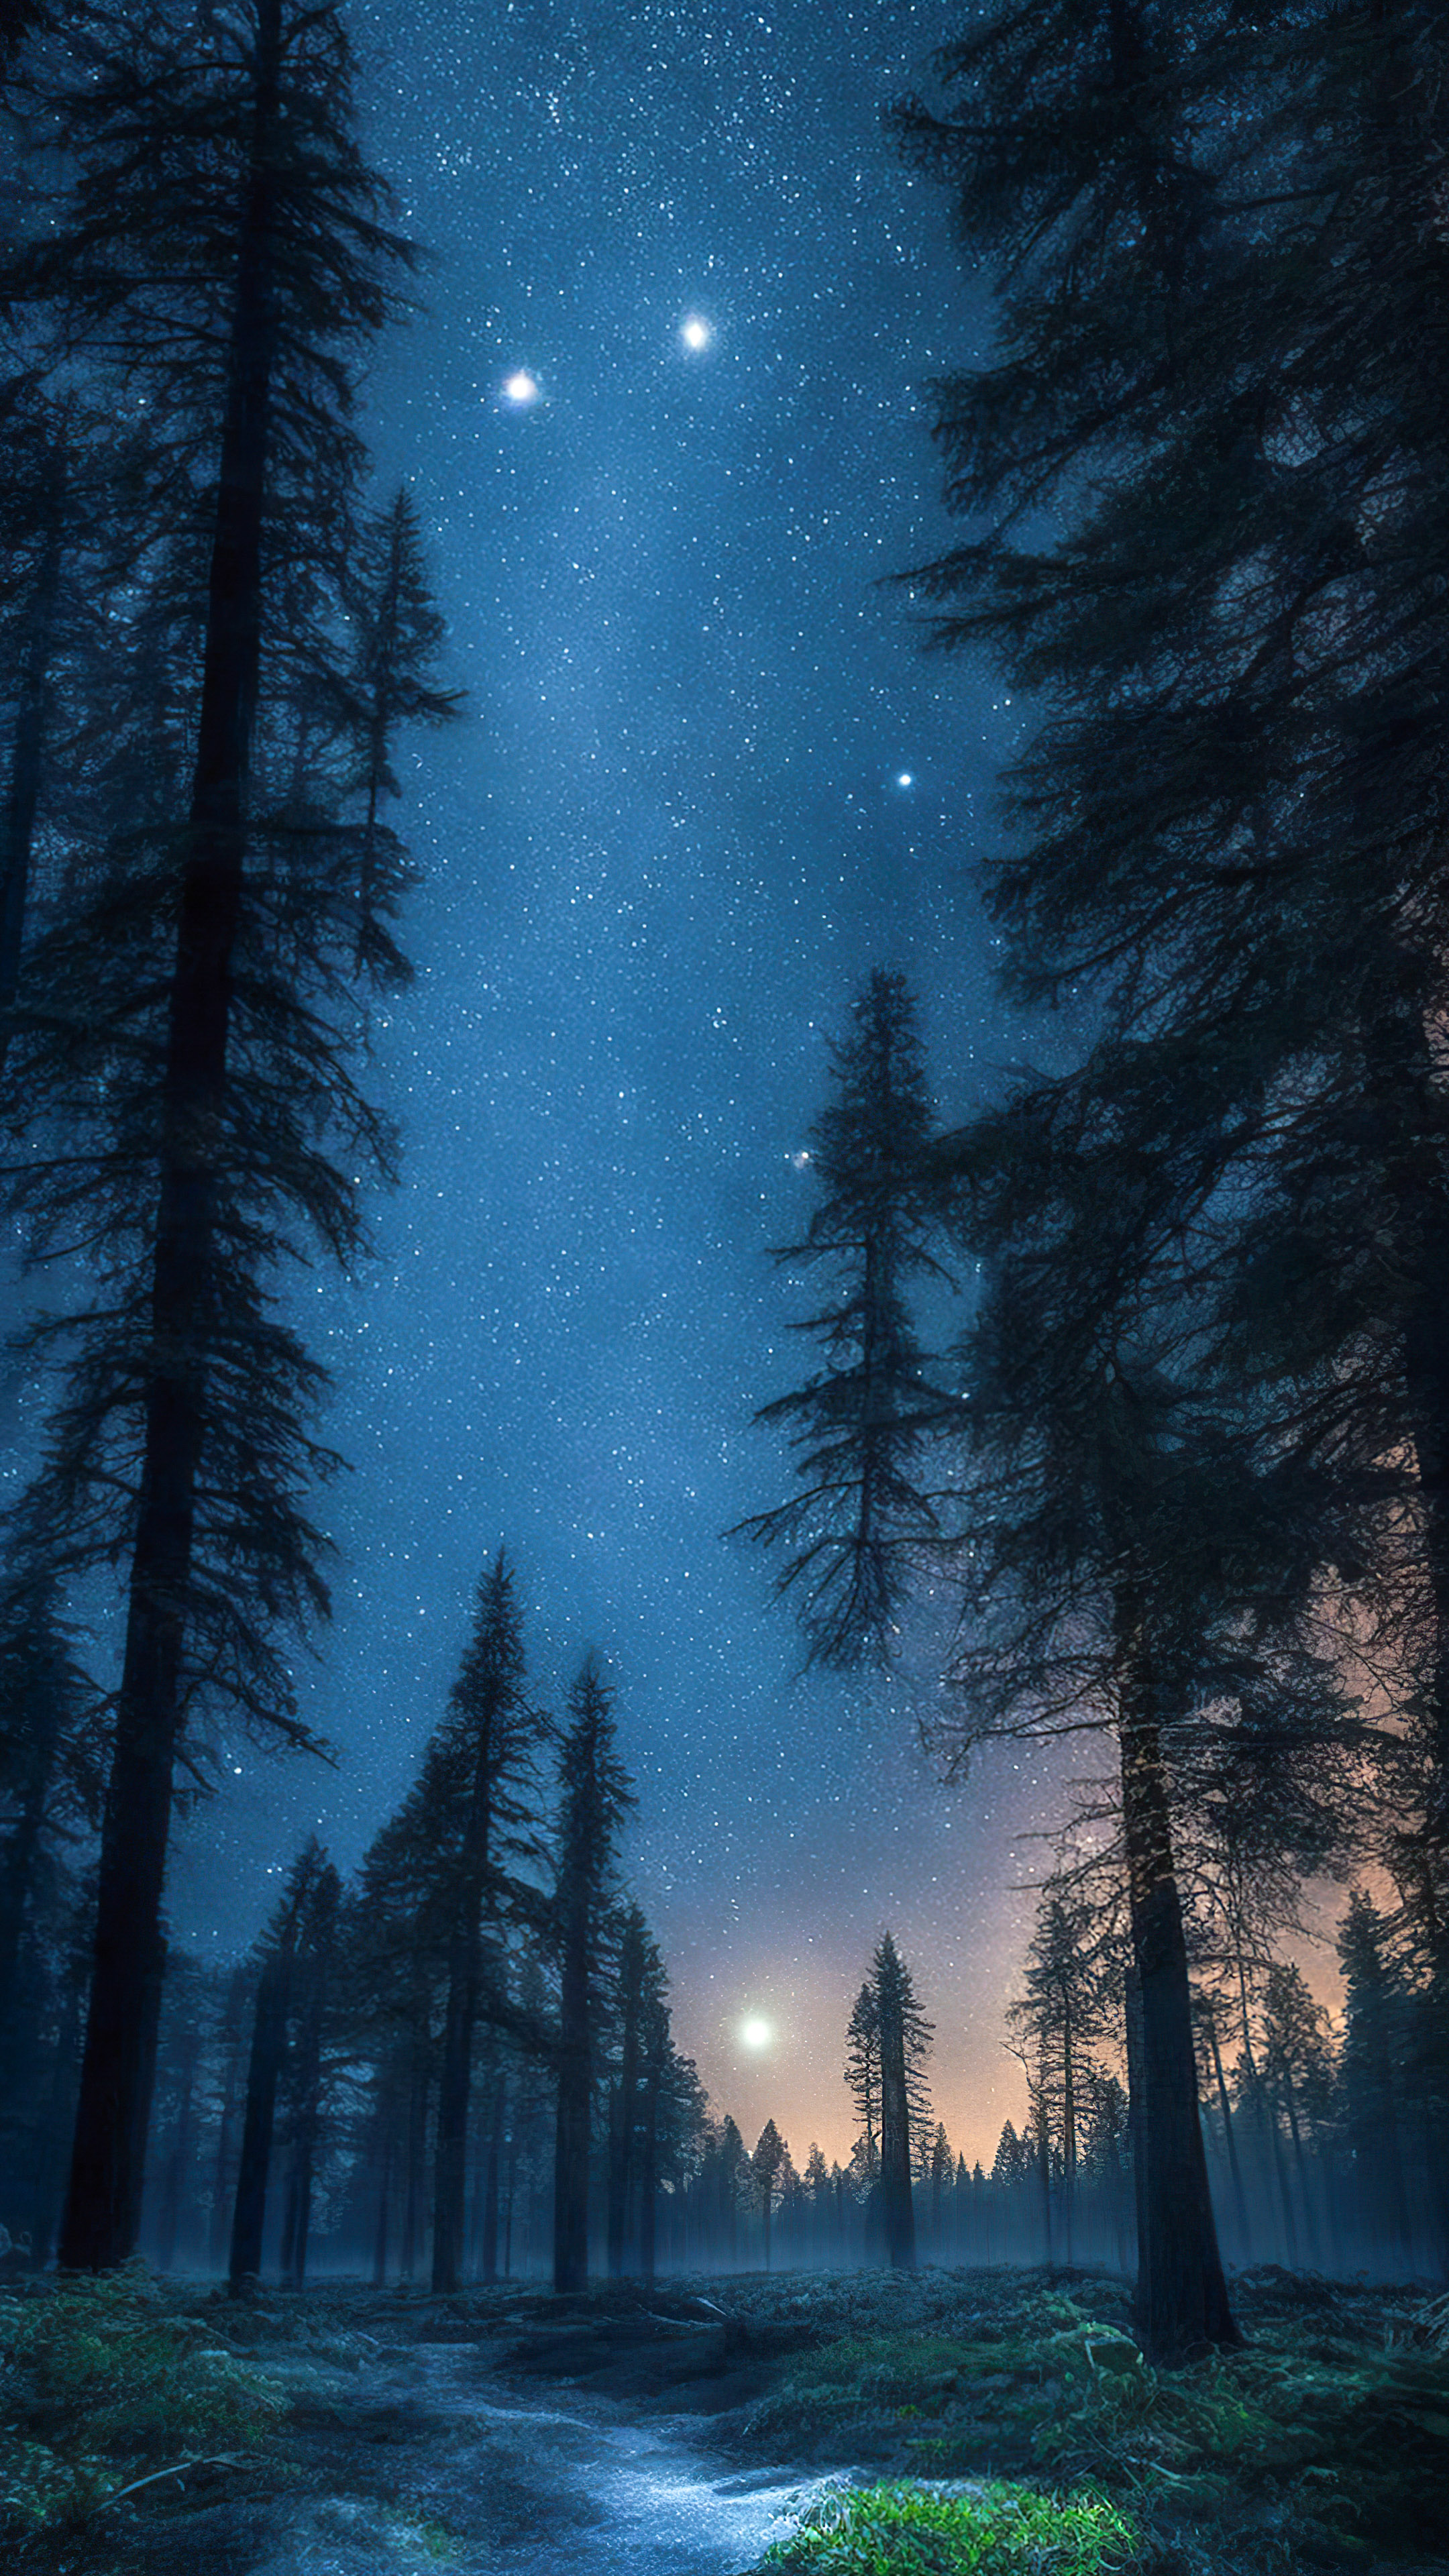 Vivez la tranquillité de notre fond d'écran de ciel de minuit, dépeignant une forêt tranquille la nuit, avec de grands arbres anciens sous un ciel étoilé et une douce lueur de clair de lune.